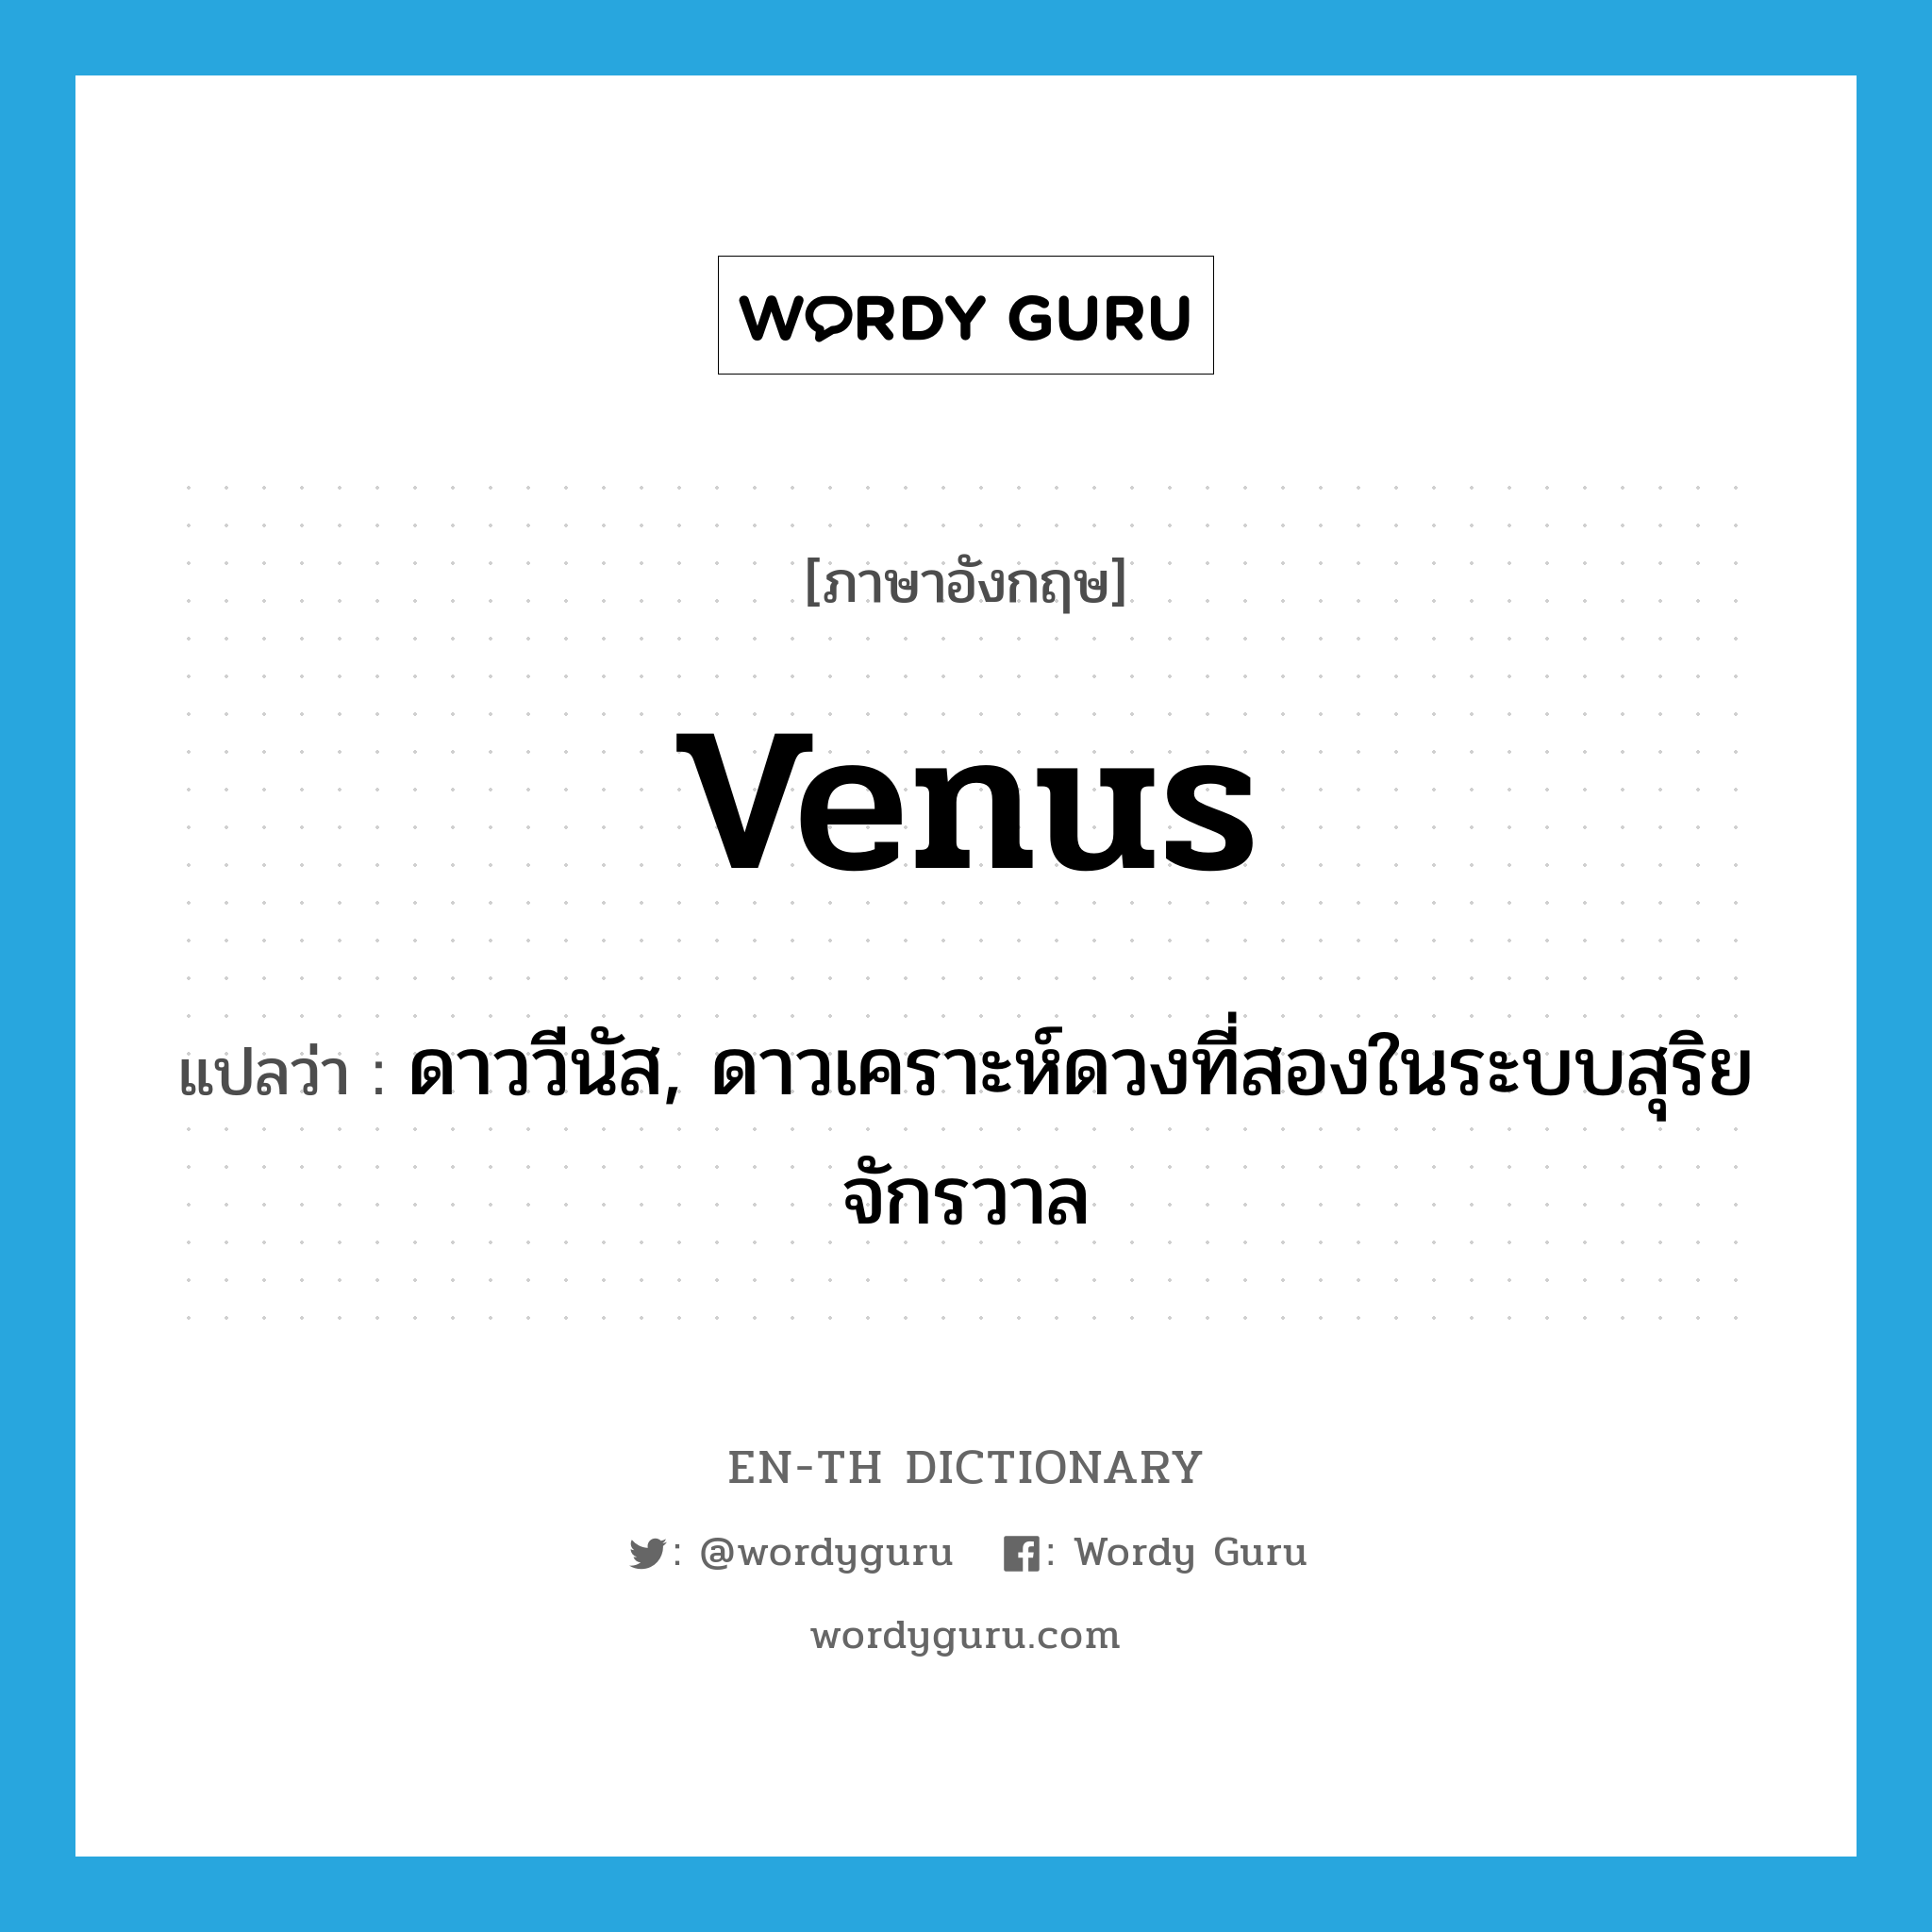 ดาววีนัส, ดาวเคราะห์ดวงที่สองในระบบสุริยจักรวาล ภาษาอังกฤษ?, คำศัพท์ภาษาอังกฤษ ดาววีนัส, ดาวเคราะห์ดวงที่สองในระบบสุริยจักรวาล แปลว่า Venus ประเภท N หมวด N